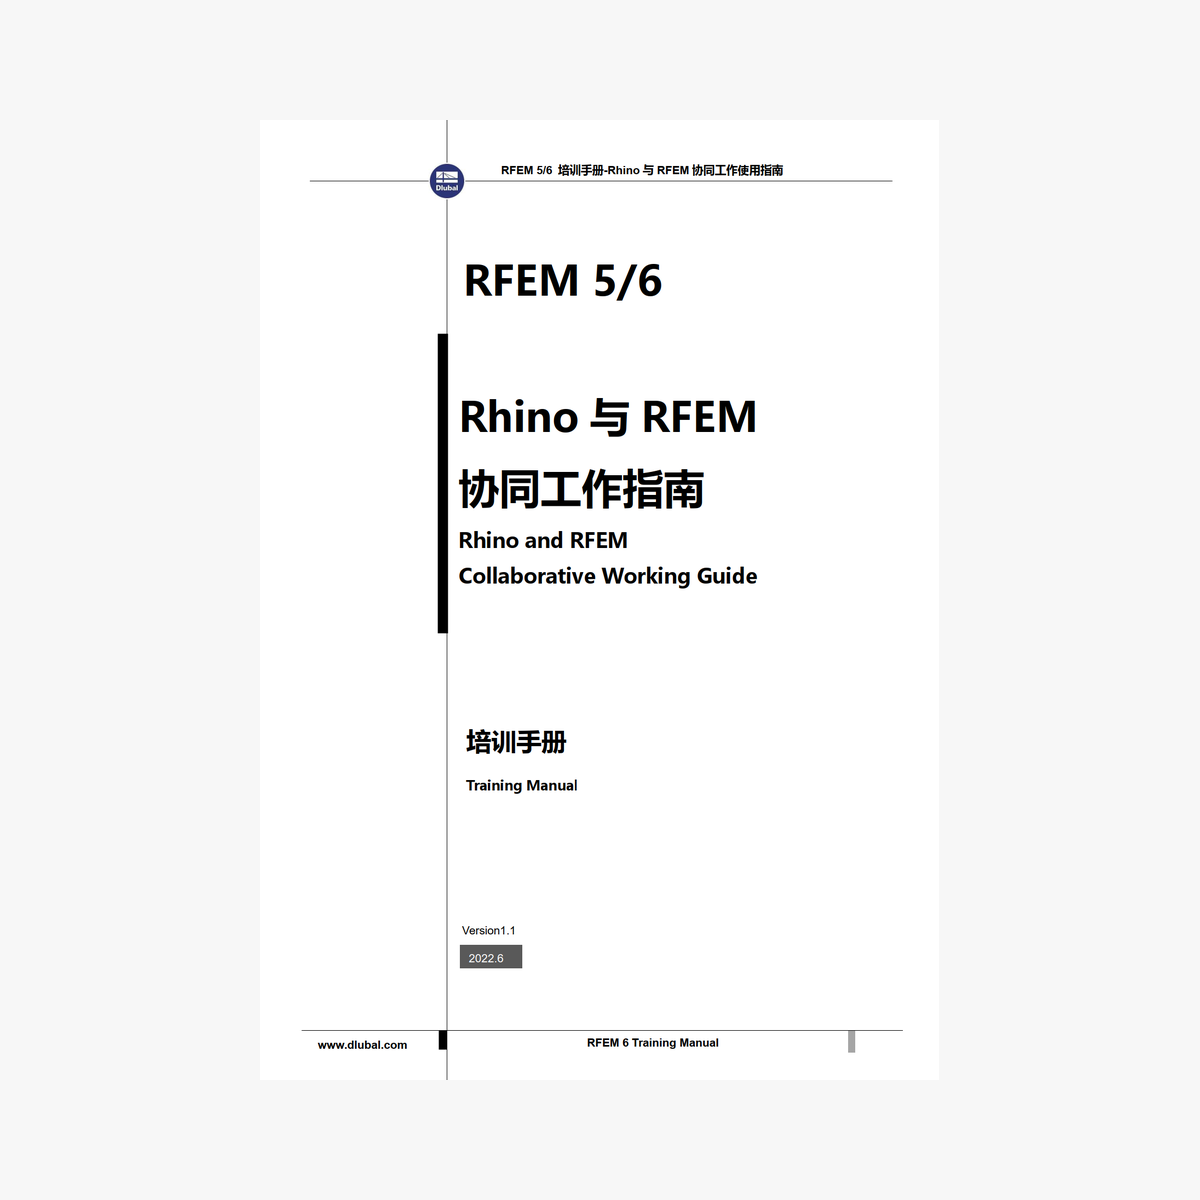 Manual tutorial RFEM 6 - Um guia para trabalhar com o Rhino e o RFEM